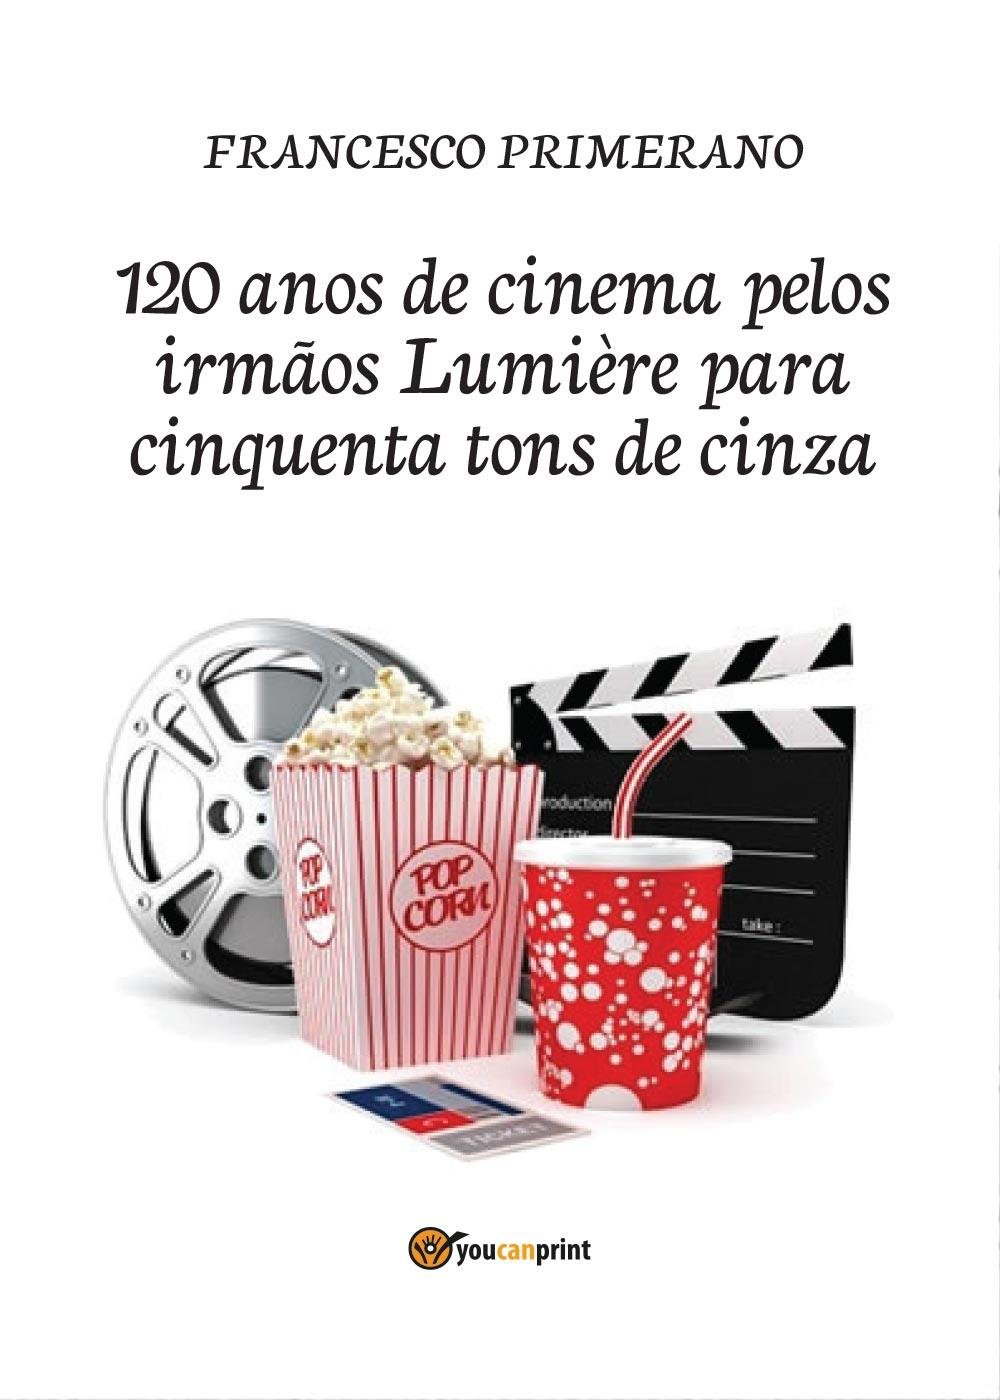 120 anos de cinema pelos irmãos Lumière para cinquenta tons de cinza